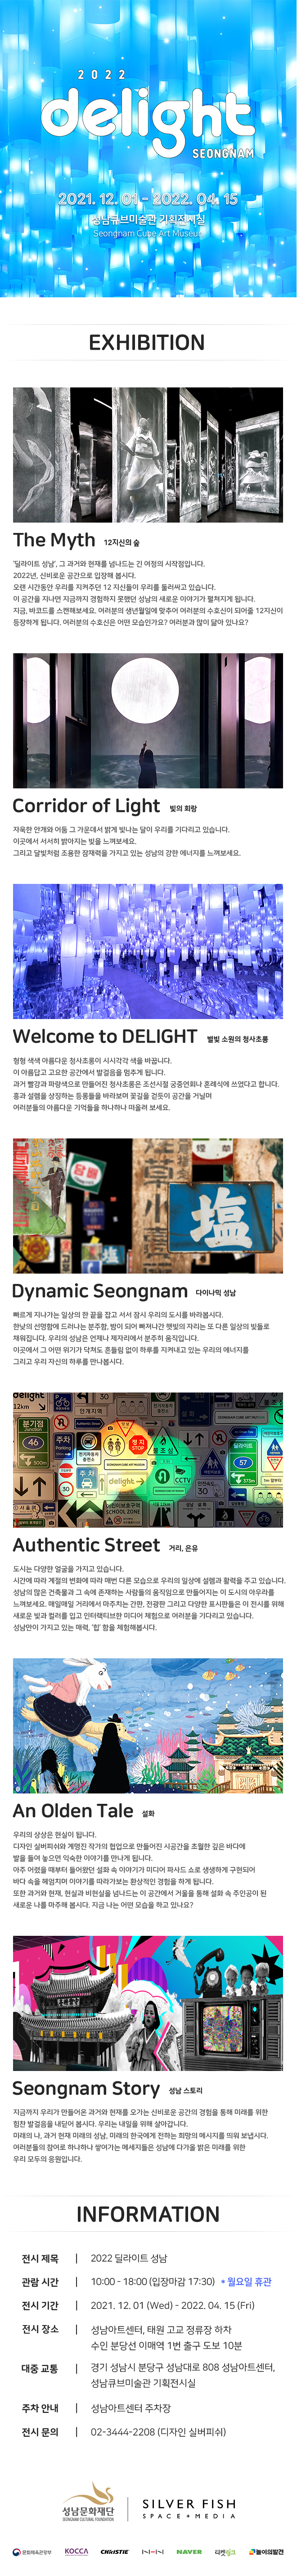 2022 delight SEONGNAM 2021. 12. 01 - 2022. 04 15 성남큐브미술관 기획전시실 Seongnam Cube Art Museun

EXHIBITION 

The Myth 12지신의 숲
'딜라이트 성남, 그 과거와 현재를 넘나드는 긴 여정의 시작점입니다. 2022년, 신비로운 공간으로 입장해 봅시다. 오랜 시간동안 우리를 지켜주던 12 지신들이 우리를 둘러싸고 있습니다. 이 공간을 지나면 지금까지 경험하지 못했던 성남의 새로운 이야기가 펼쳐지게 됩니다. 지금, 바코드를 스캔해보세요. 여러분의 생년월일에 맞추어 여러분의 수호신이 되어줄 12지신이 등장하게 됩니다. 여러분의 수호신은 어떤 모습인가요? 여러분과 많이 닮아 있나요?

Corridor of Light 빛의 회랑
자욱한 안개와 어둠 그 가운데서 밝게 빛나는 달이 우리를 기다리고 있습니다. 이곳에서 서서히 밝아지는 빛을 느껴보세요. 그리고 달빛처럼 조용한 잠재력을 가지고 있는 성남의 강한 에너지를 느껴보세요.

Welcome to DELIGHT 별빛 소원의 청사초롱
형형색색 아름다운 청사초롱이 시시각각 색을 바꿉니다. 이 아름답고 고요한 공간에서 발걸음을 멈추게 됩니다. 과거 빨강과 파랑색으로 만들어진 청사초롱은 조선시절 궁중연회나 혼례식에 쓰였다고 합니다. 흥과 설렘을 상징하는 등롱들을 바라보며 꽃길을 걷듯이 공간을 거닐며 여러분들의 아름다운 기억들을 하나하나 떠올려 보세요.

Dynamic Seongnam 다이나믹 성남
빠르게 지나가는 일상의 한 끝을 잡고 서서 잠시 우리의 도시를 바라봅시다. 한낮의 선명함에 드러나는 분주함, 밤이 되어 빠져나간 햇빛의 자리는 또 다른 일상의 빛들로 채워집니다. 우리의 성남은 언제나 제자리에서 분주히 움직입니다. 이곳에서 그 어떤 위기가 닥쳐도 흔들림 없이 하루를 지켜내고 있는 우리의 에너지를 그리고 우리 자신의 하루를 만나봅시다.

Authentic Street 거리, 은유
도시는 다양한 얼굴을 가지고 있습니다. 시간에 따라 계절의 변화에 따라 매번 다른 모습으로 우리의 일상에 설렘과 활력을 주고 있습니다. 성남의 많은 건축물과 그 속에 존재하는 사람들의 움직임으로 만들어지는 이 도시의 아우라를 느껴보세요. 매일매일 거리에서 마주치는 간판, 전광판 그리고 다양한 표시판들은 이 전시를 위해 새로운 빛과 컬러를 입고 인터랙티브한 미디어 체험으로 여러분을 기다리고 있습니다. 성남만이 가지고 있는 매력, '힙' 함을 체험해봅시다.

An Olden Tale 설화
우리의 상상은 현실이 됩니다. 디자인 실버피쉬와 계명진 작가의 협업으로 만들어진 시공간을 초월한 깊은 바다에 발을 들여 놓으면 익숙한 이야기를 만나게 됩니다. 아주 어렸을 때부터 들어왔던 설화 속 이야기가 미디어 파사드 쇼로 생생하게 구현되어 바다 속을 헤엄치며 이야기를 따라가보는 환상적인 경험을 하게 됩니다. 또한 과거와 현재, 현실과 비현실을 넘나드는 이 공간에서 거울을 통해 설화 속 주인공이 된 새로운 나를 마주해 봅시다. 지금 나는 어떤 모습을 하고 있나요?

Seongnam Story 성남 스토리
지금까지 우리가 만들어온 과거와 현재를 오가는 신비로운 공간의 경험을 통해 미래를 위한 힘찬 발걸음을 내딛어 봅시다. 우리는 내일을 위해 살아갑니다. 미래의 나, 과거 현재 미래의 성남, 미래의 한국에게 전하는 희망의 메시지를 띄워 보냅시다. 여러분들의 참여로 하나하나 쌓여가는 메세지들은 성남에 다가올 밝은 미래를 위한 우리 모두의 응원입니다.

INFORMATION

전시 제목 | 2022 딜라이트 성남
관람 시간 | 10:00 - 18:00 (입장마감 17:30) * 월요일 휴관
전시 기간 | 2021.12.01 (Wed) - 2022. 04. 15 (Fri)
전시 장소 | 성남아트센터, 태원 고교 정류장 하차 수인 분당선 이매역 1번 출구 도보 10분
대중 교통 | 경기 성남시 분당구 성남대로 808 성남아트센터, 성남큐브미술관 기획전시실
주차 안내 | 성남아트센터 주차장 
전시 문의 | 02-3444-2208 (디자인 실버피쉬)

성남문화재단 SEONGNAM CULTURAL FOUNDATION
SILVER FISH SPACE + MEDIA
문화체육관광부
KOCCA
NAVER
티켓링크
놀이의발견
